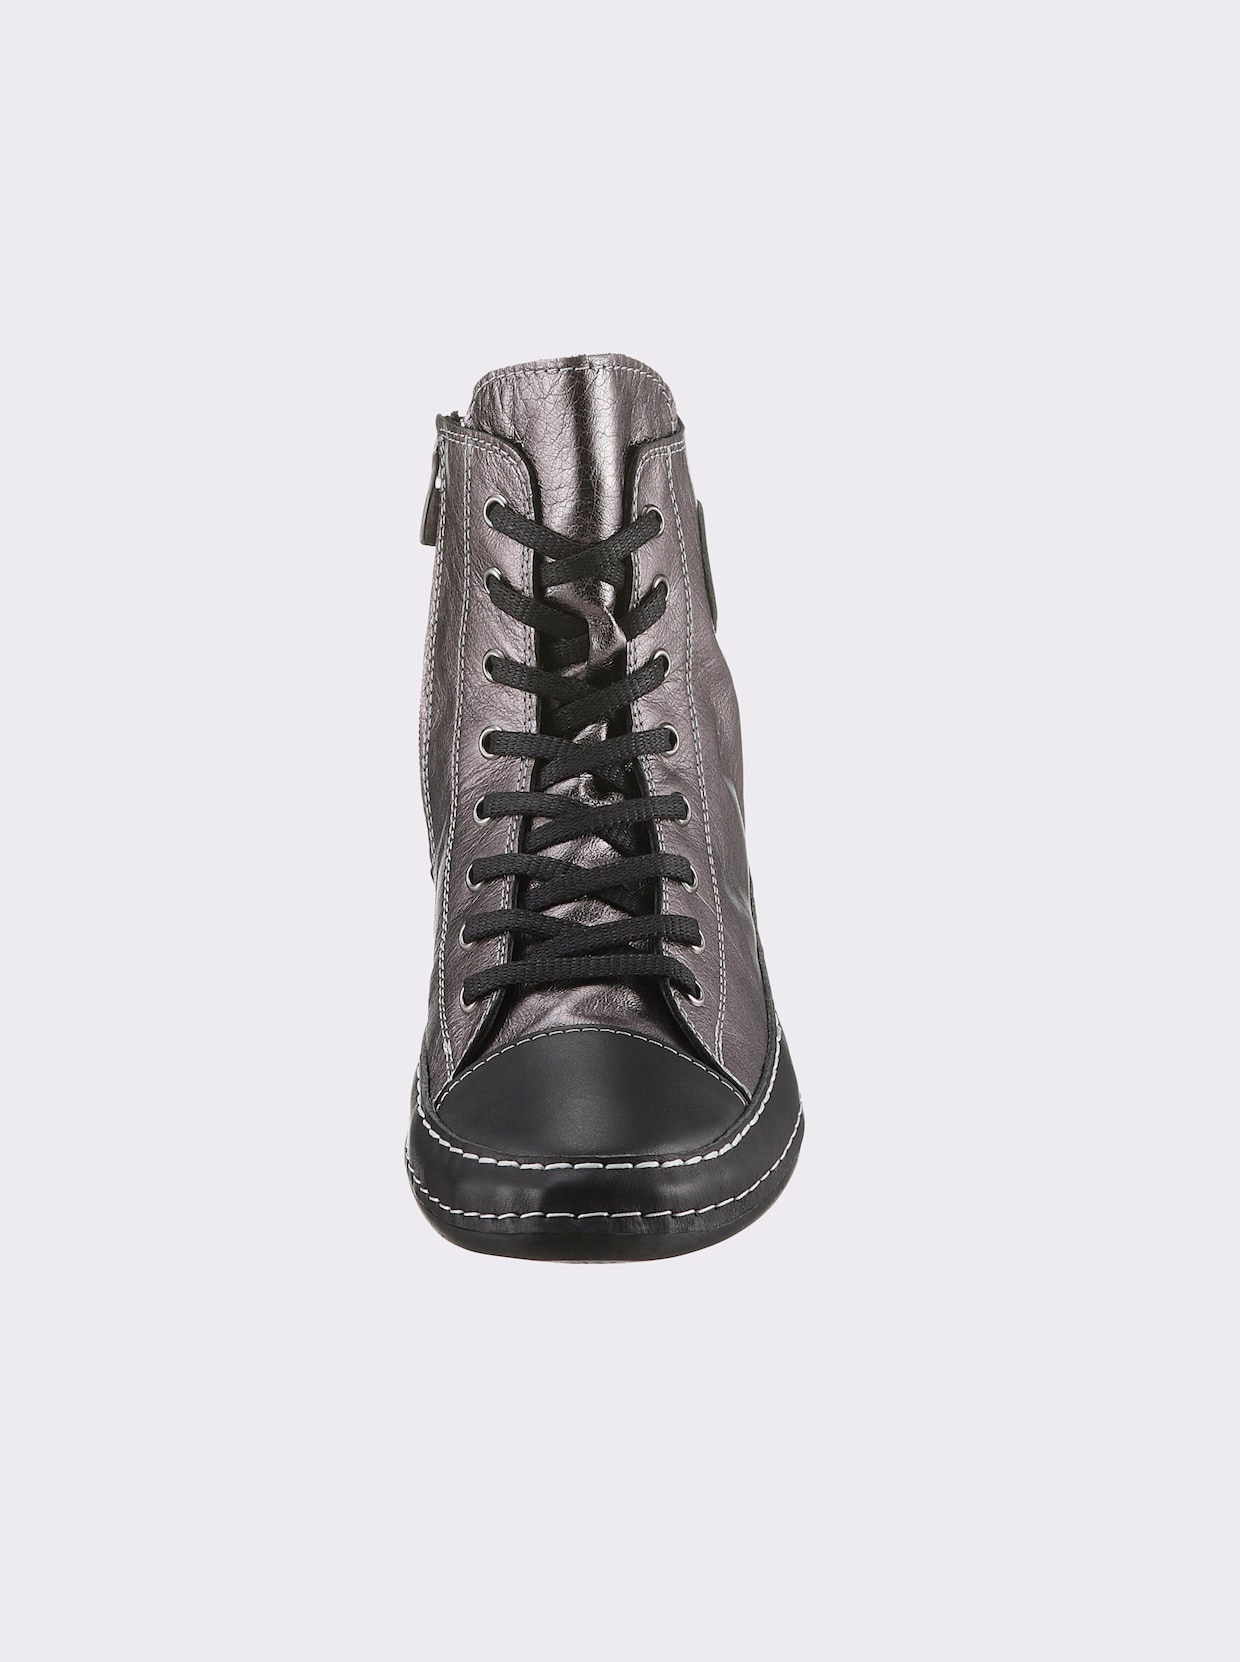 Andrea Conti Baskets - noir-couleur platine